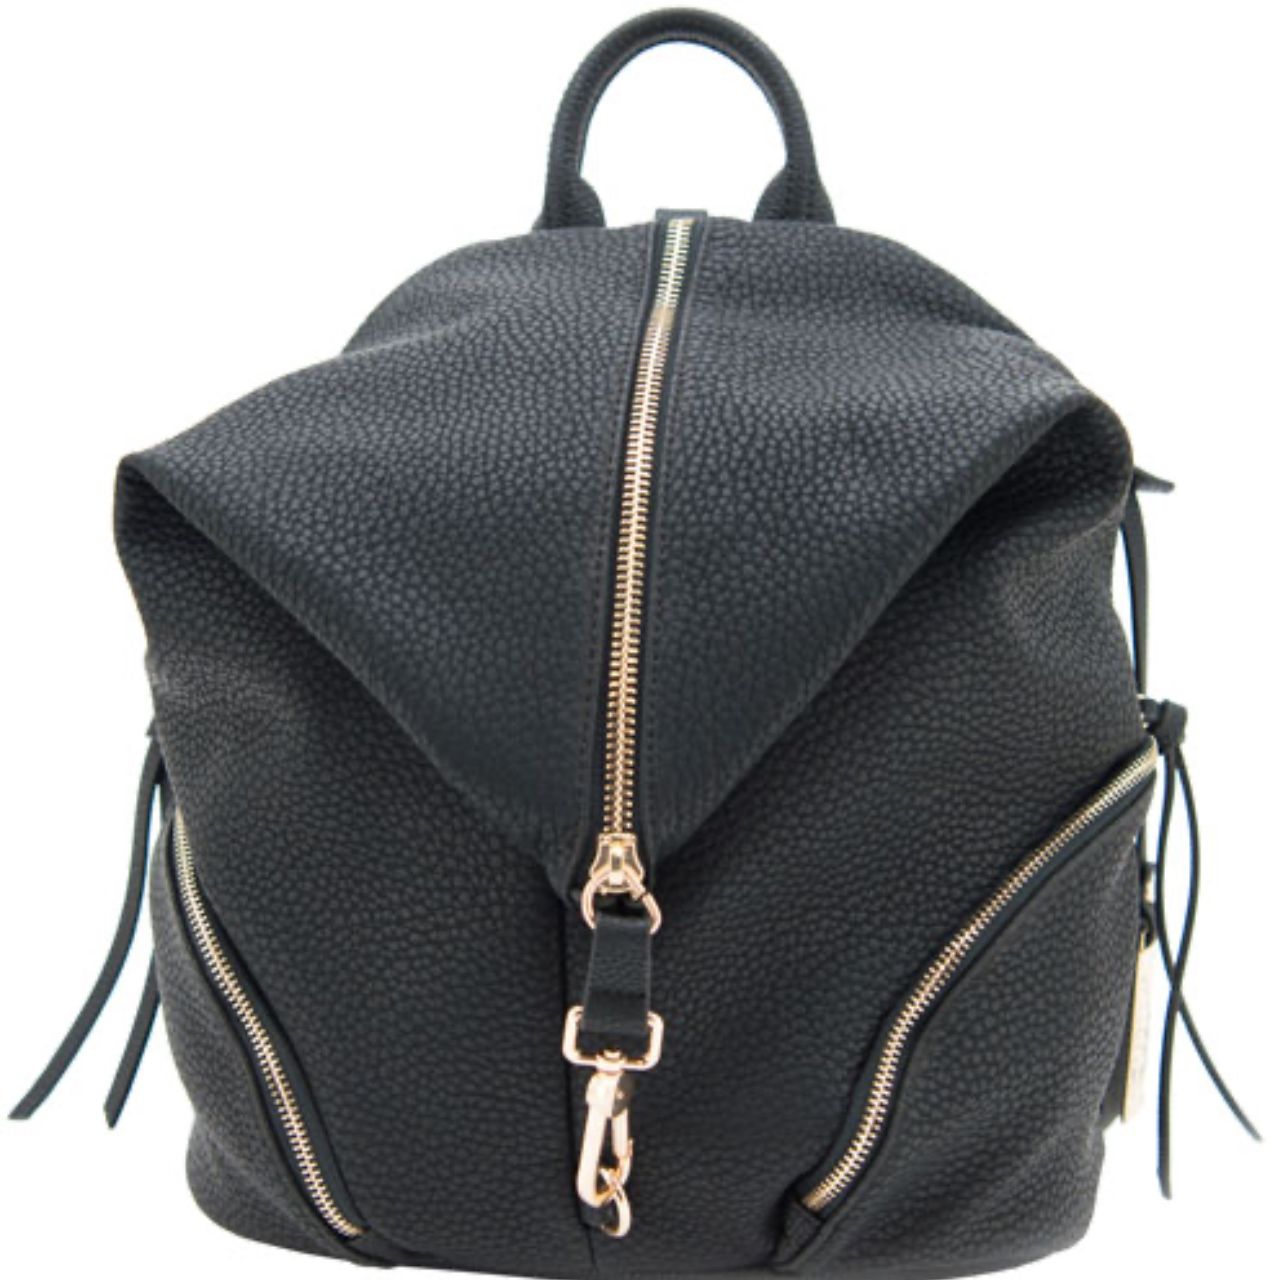 Cameleon "Aurora" black, teardrop-shaped concealed carry backpack